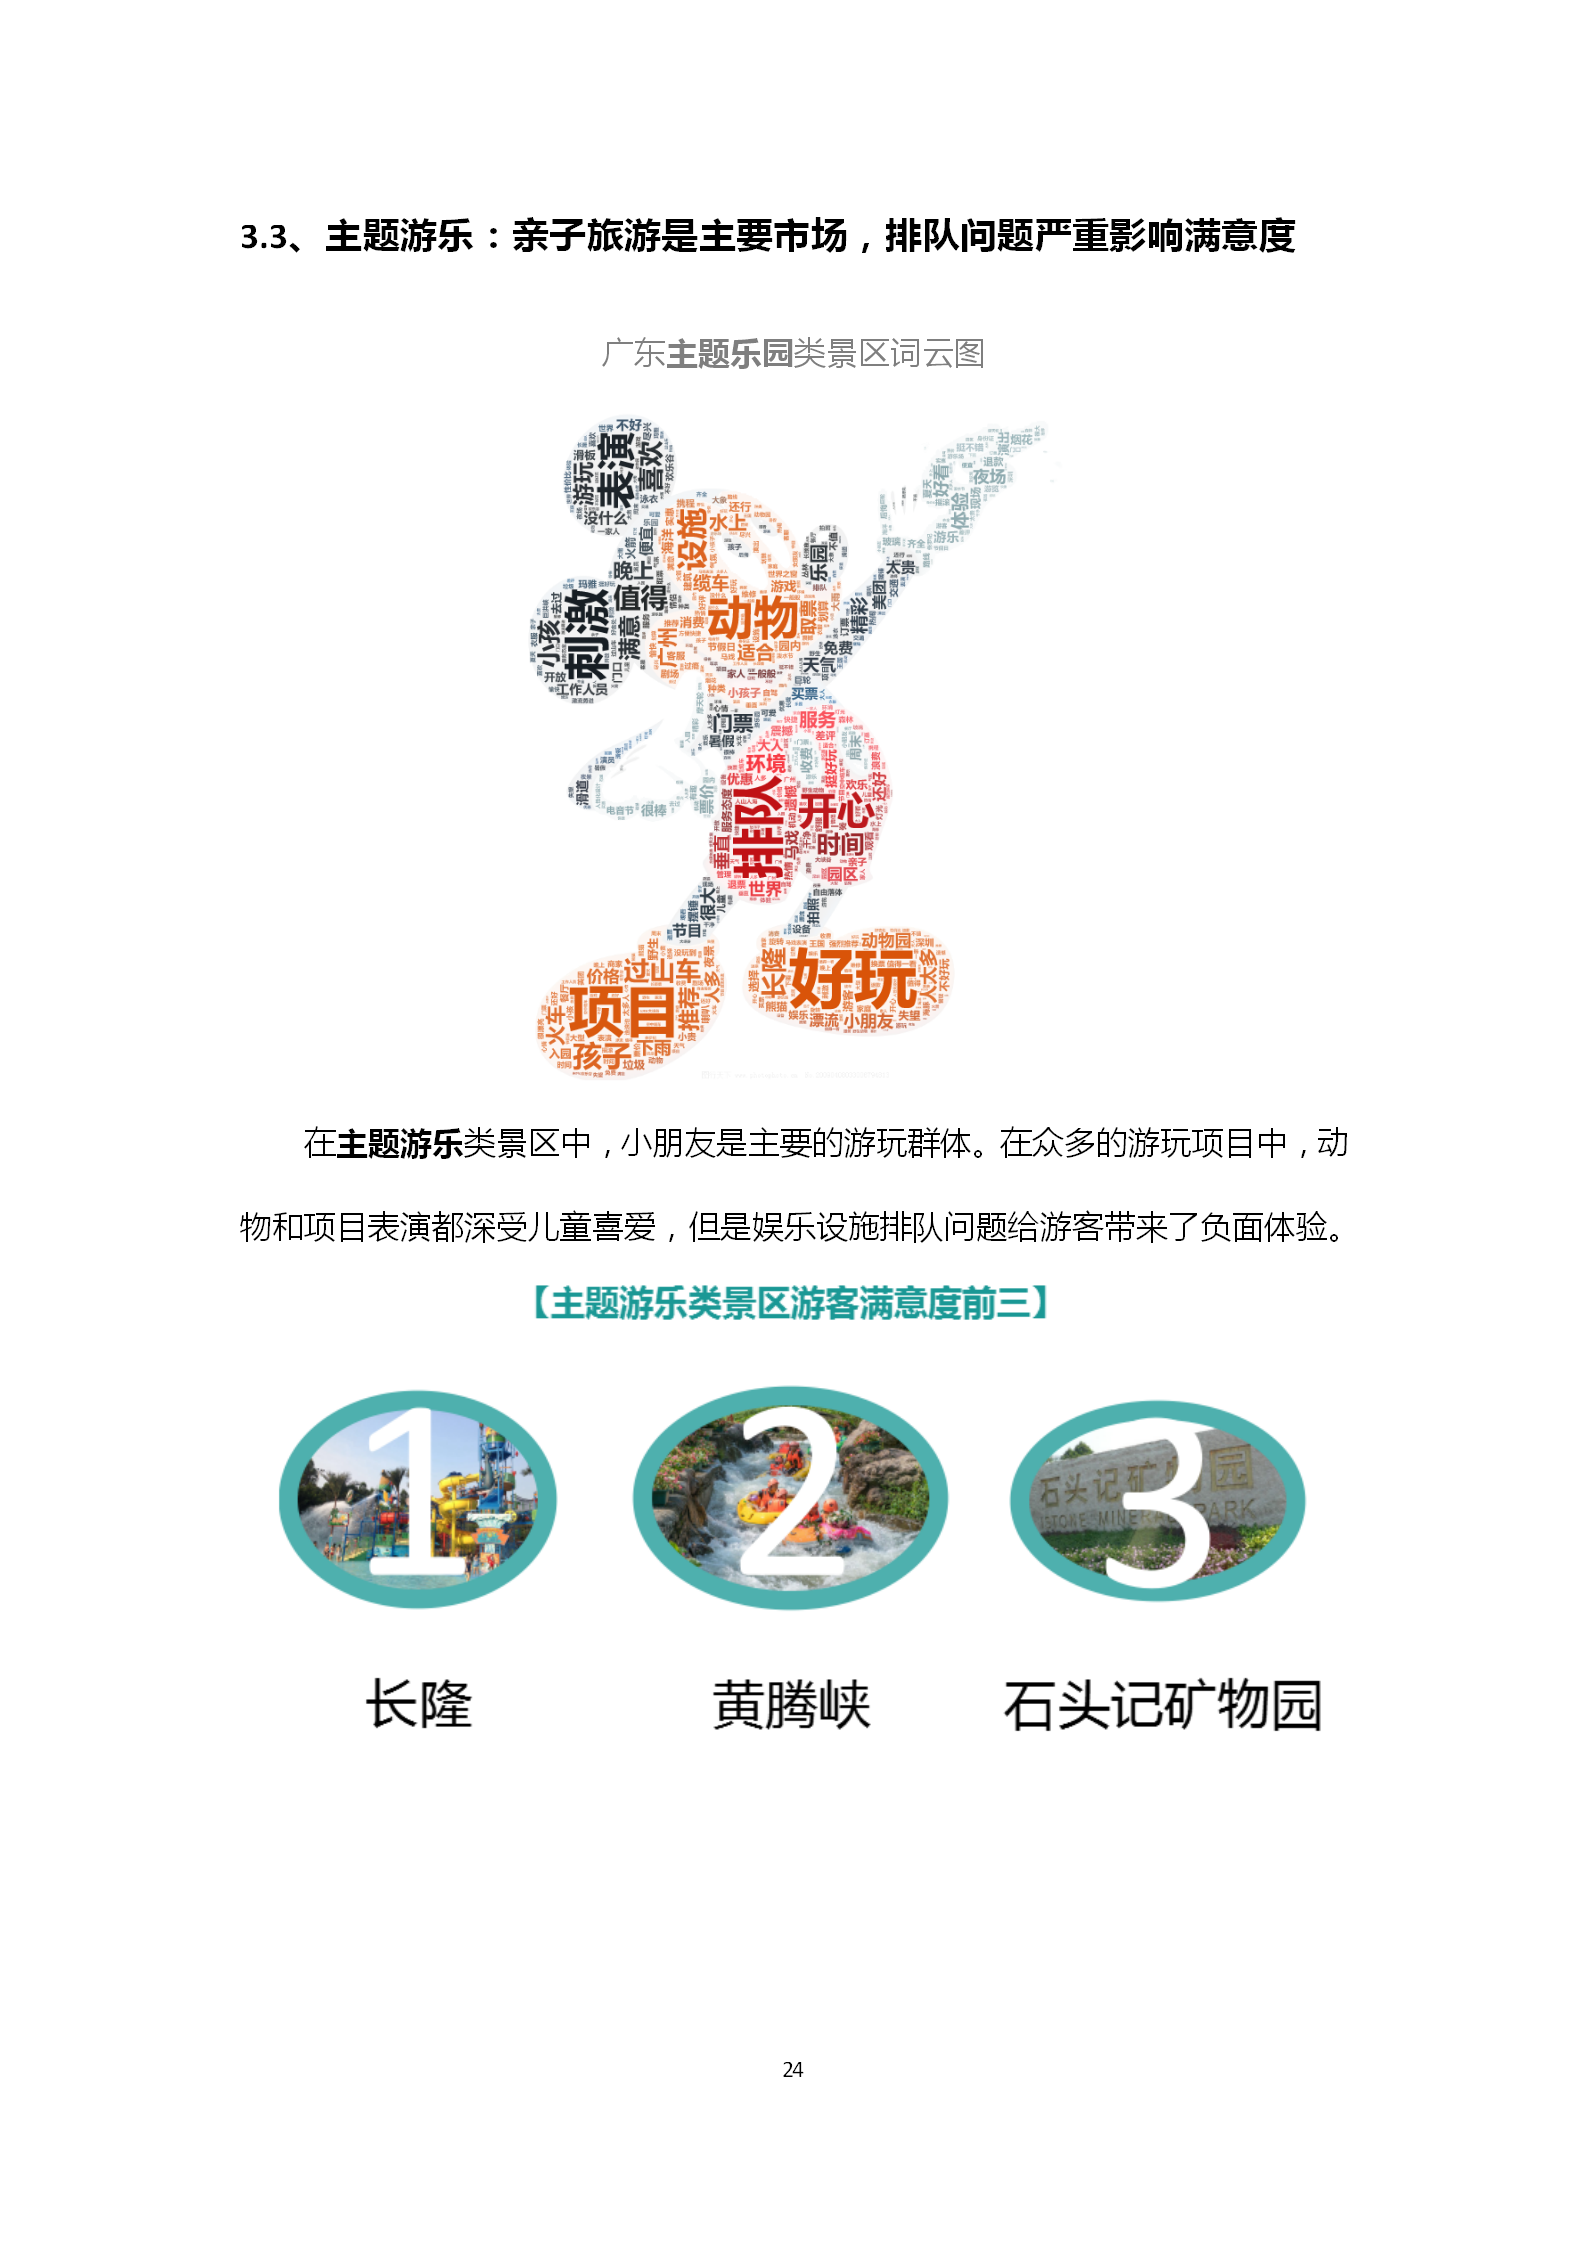 广东省旅游景区游客满意度大数据调查报告-2018年第三季度20181106_25